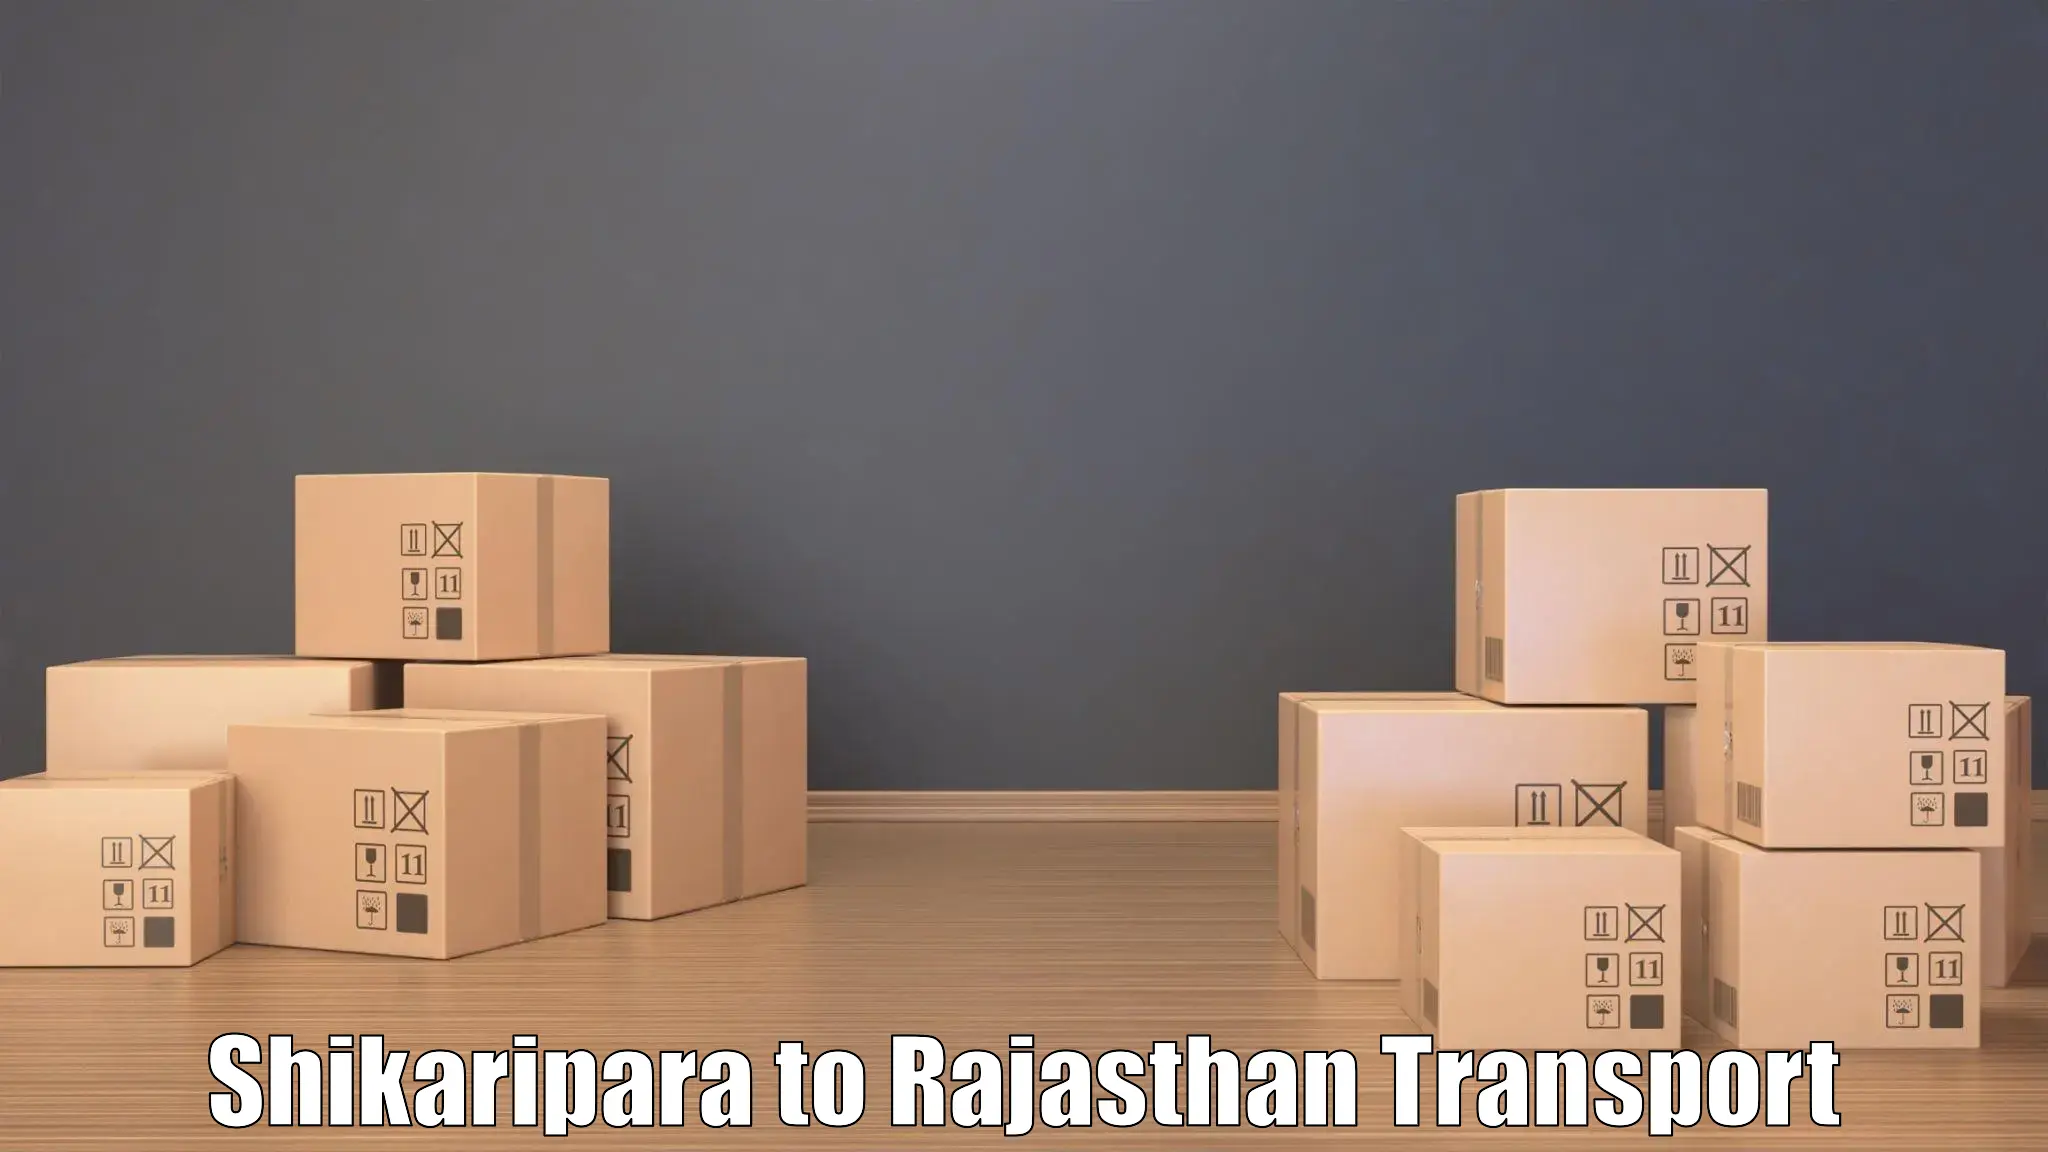 Transport in sharing Shikaripara to Shrimadhopur